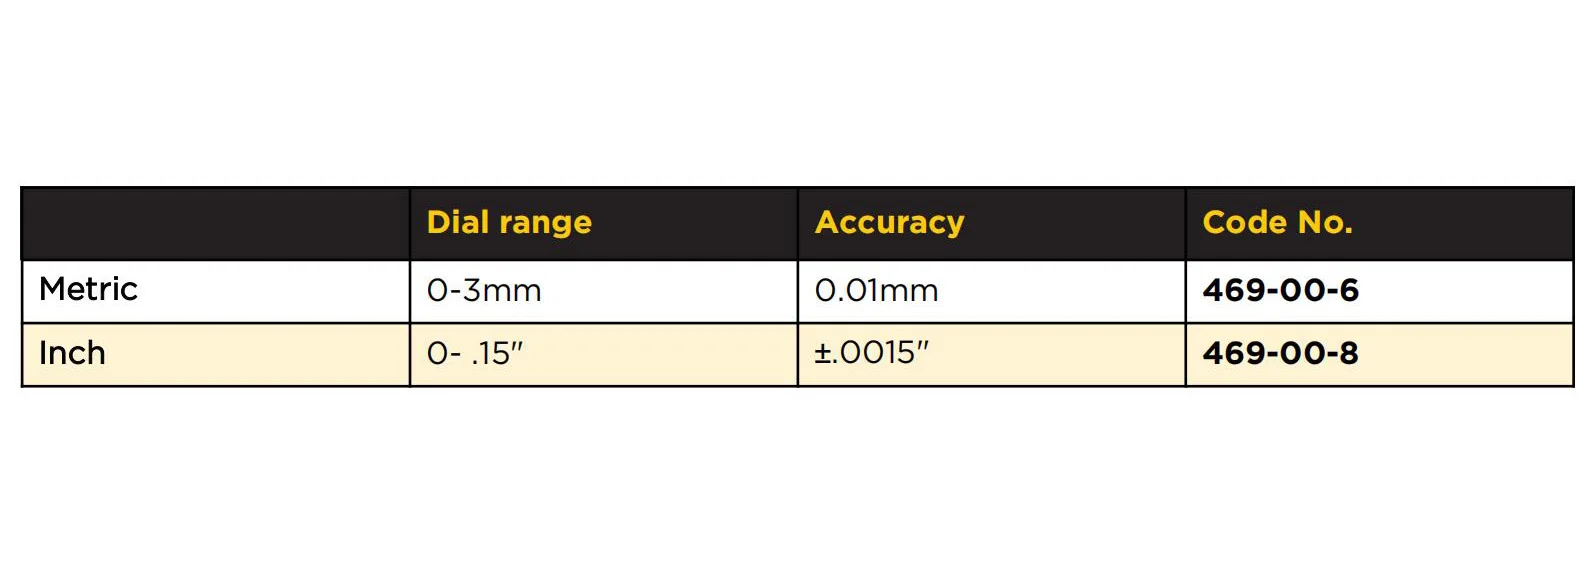 ASIMETO диапазон измерения 0-3 мм градация 0,01 мм Точность 0,01 мм Центрирующие индикаторы центральный рычаг измеритель позиционирования